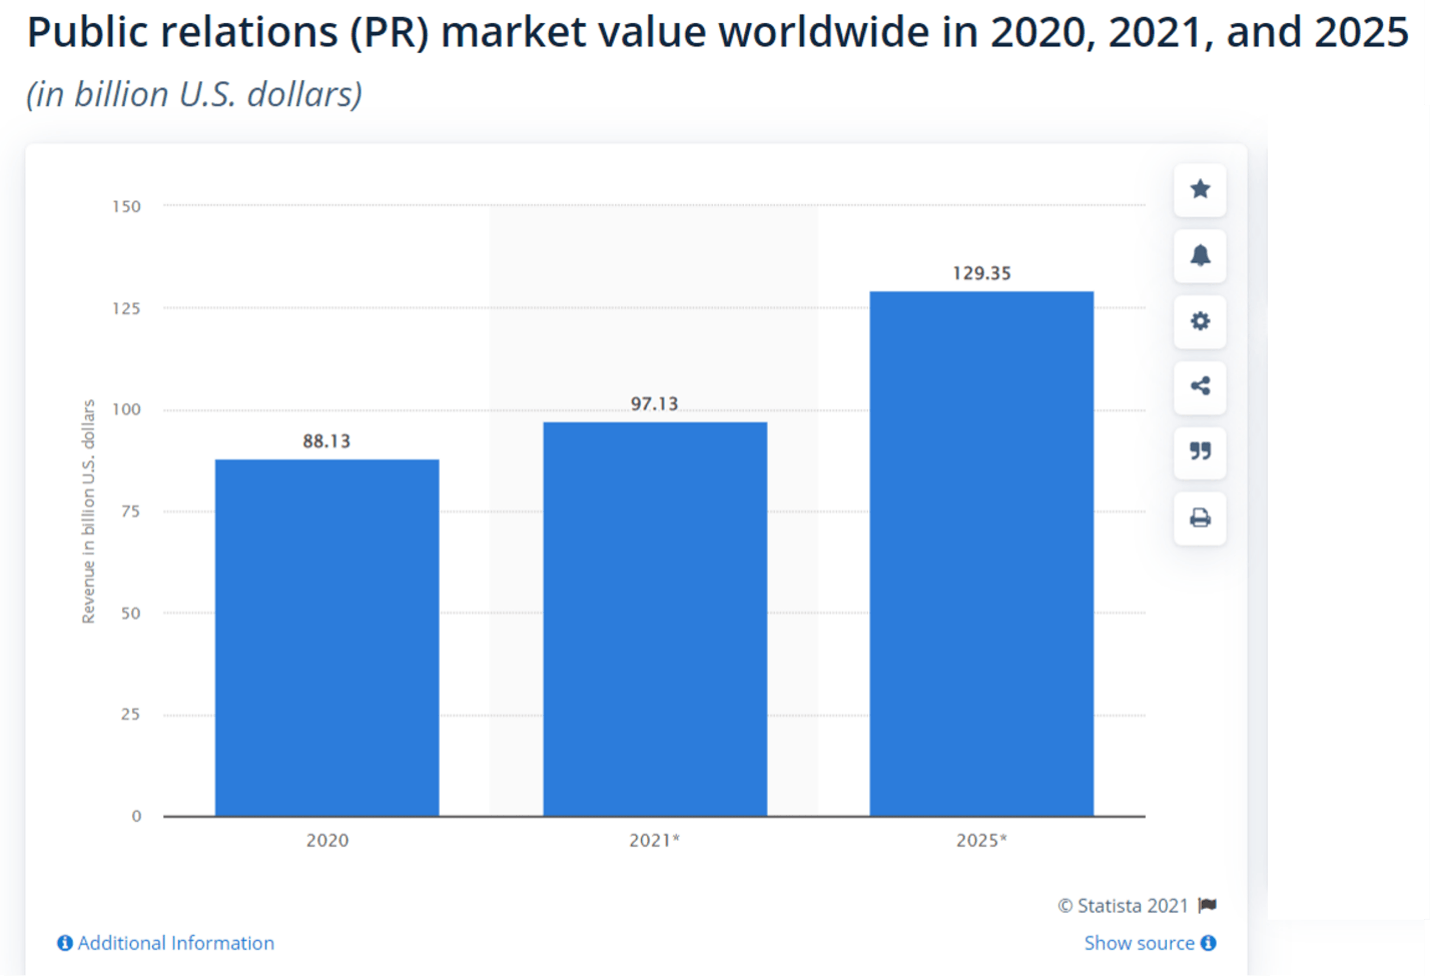 PR marktwaarde wereldwijd in 2020, 2021, and 2025.